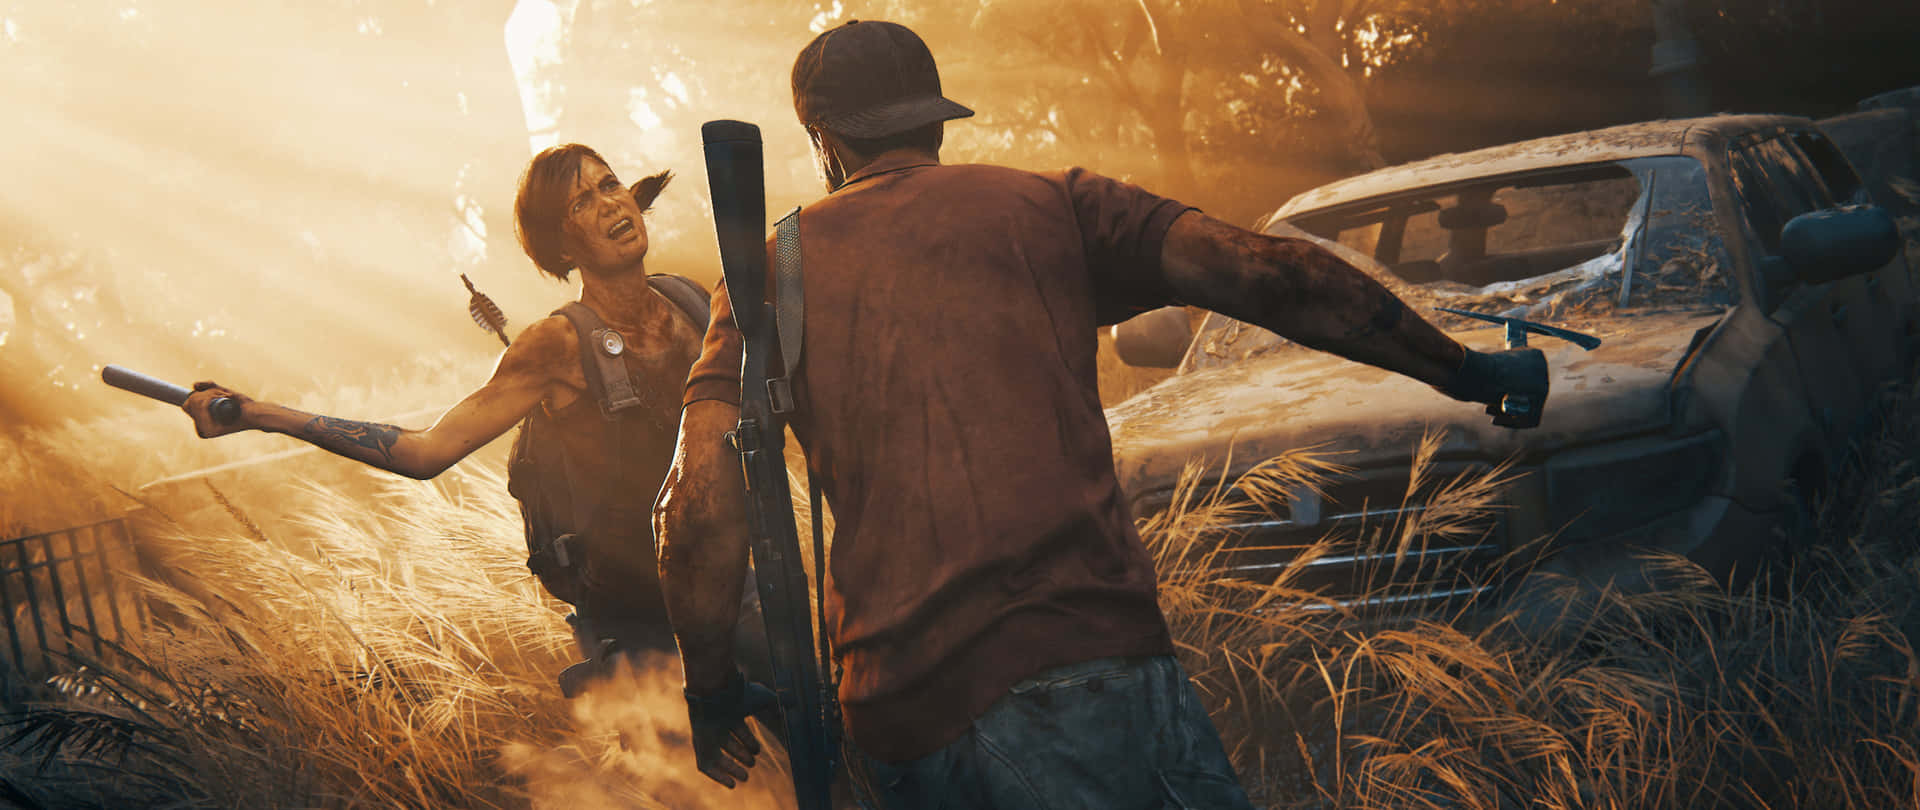 Joeled Ellie Esplorano Il Mondo Post-apocalittico Di The Last Of Us